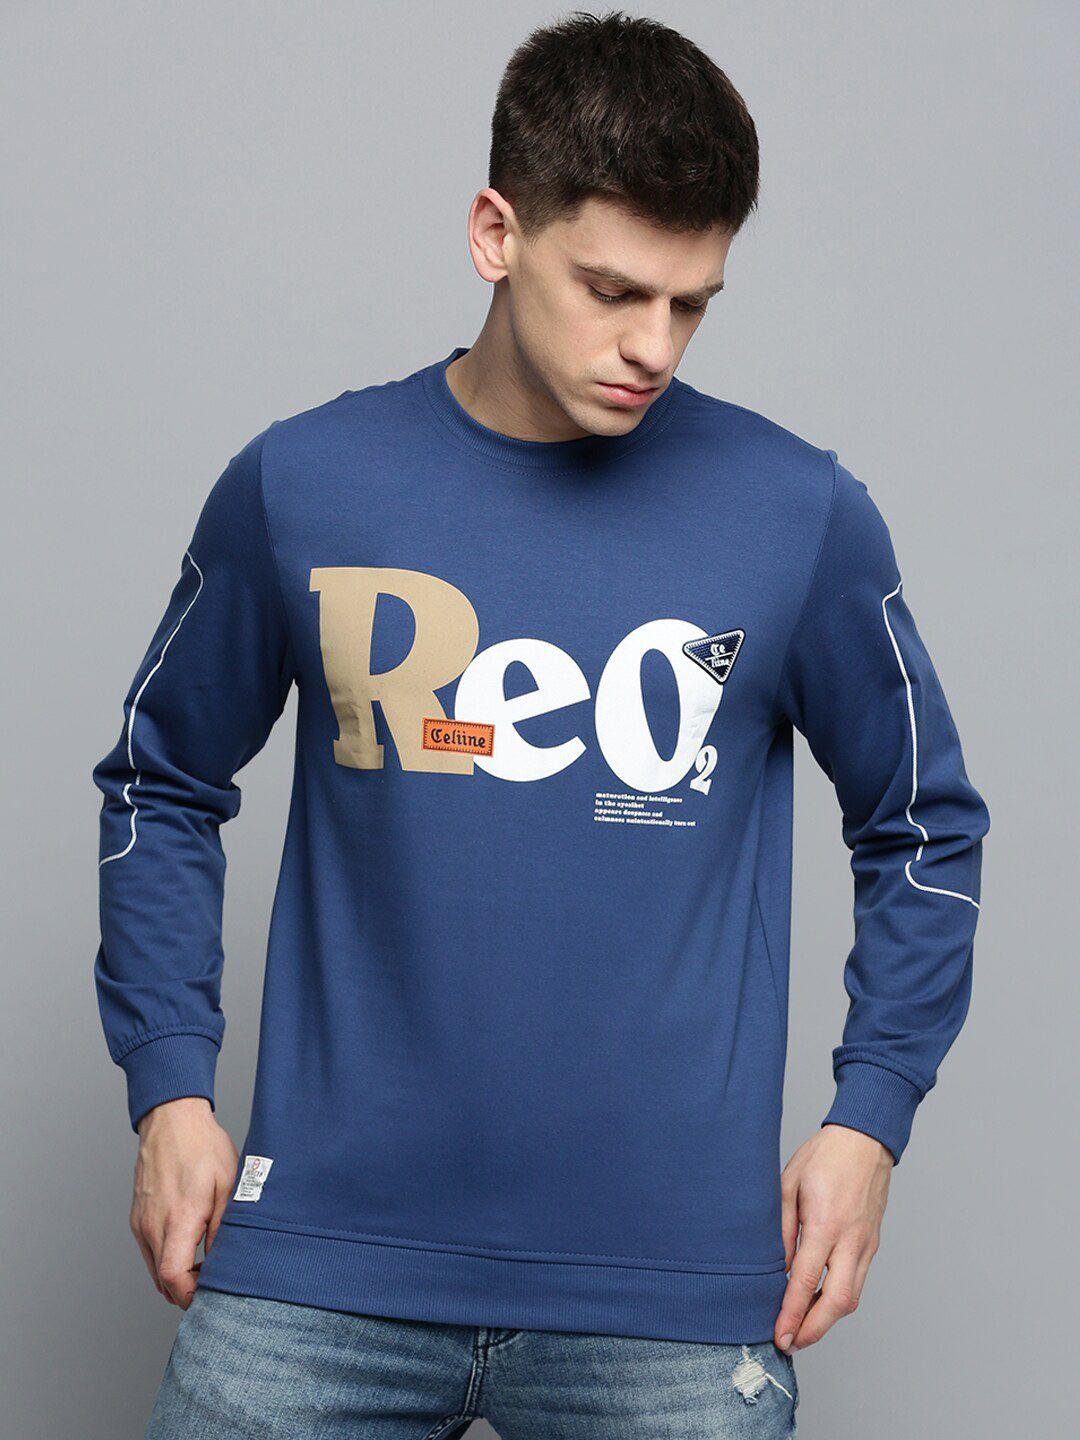 showoff-round-neck-typographic-printed-sweatshirt